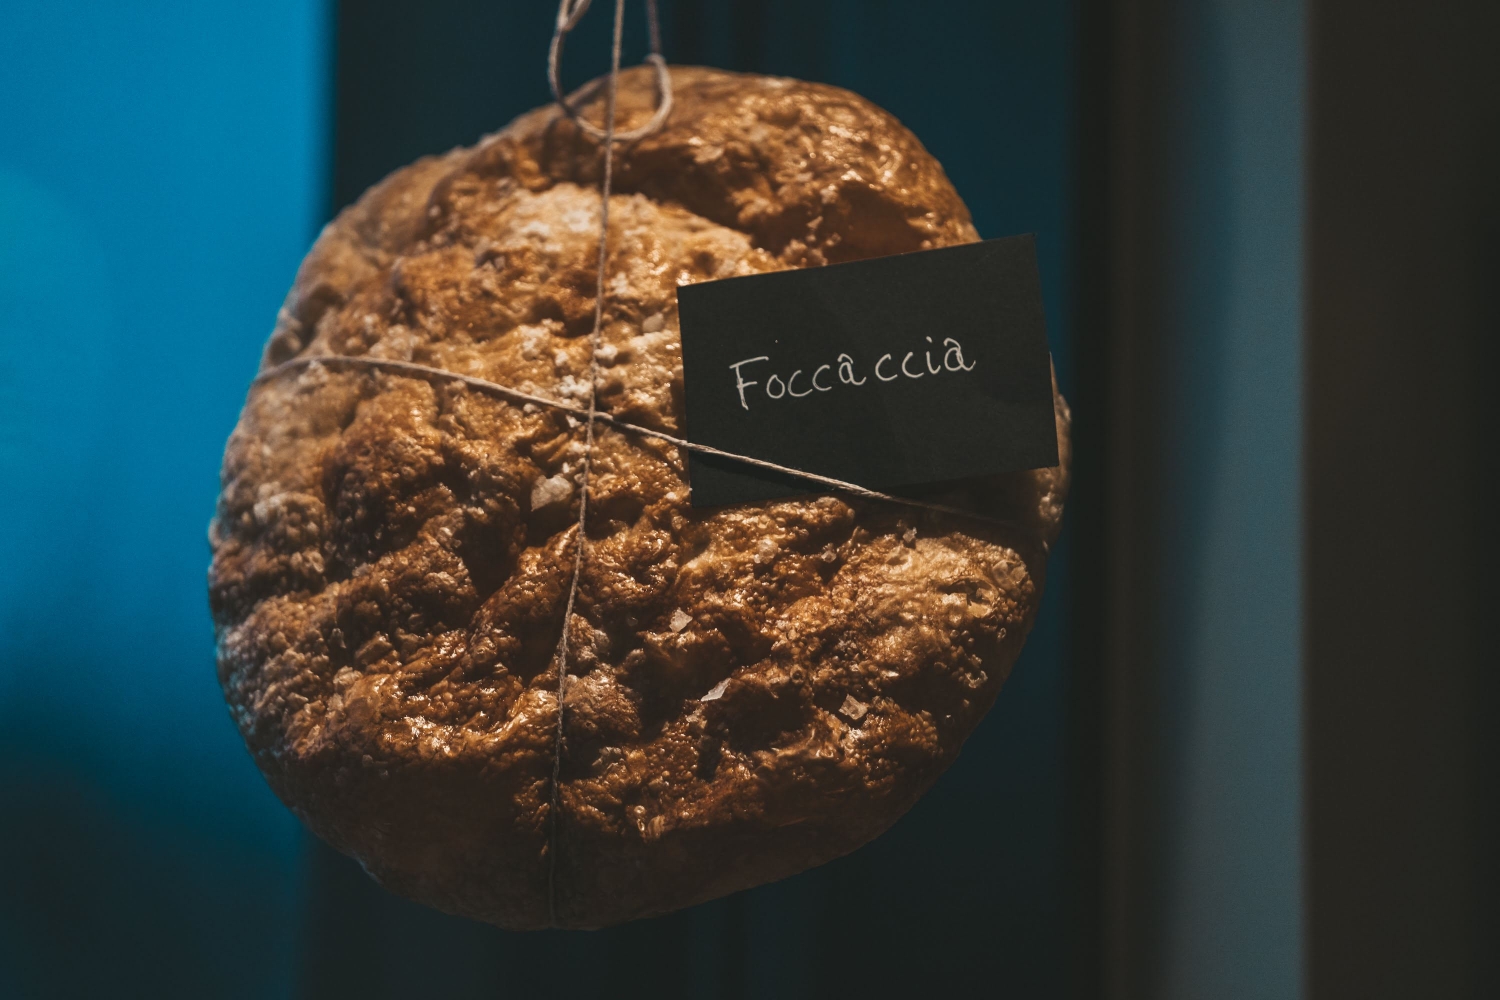 Display of a foccaccia bread